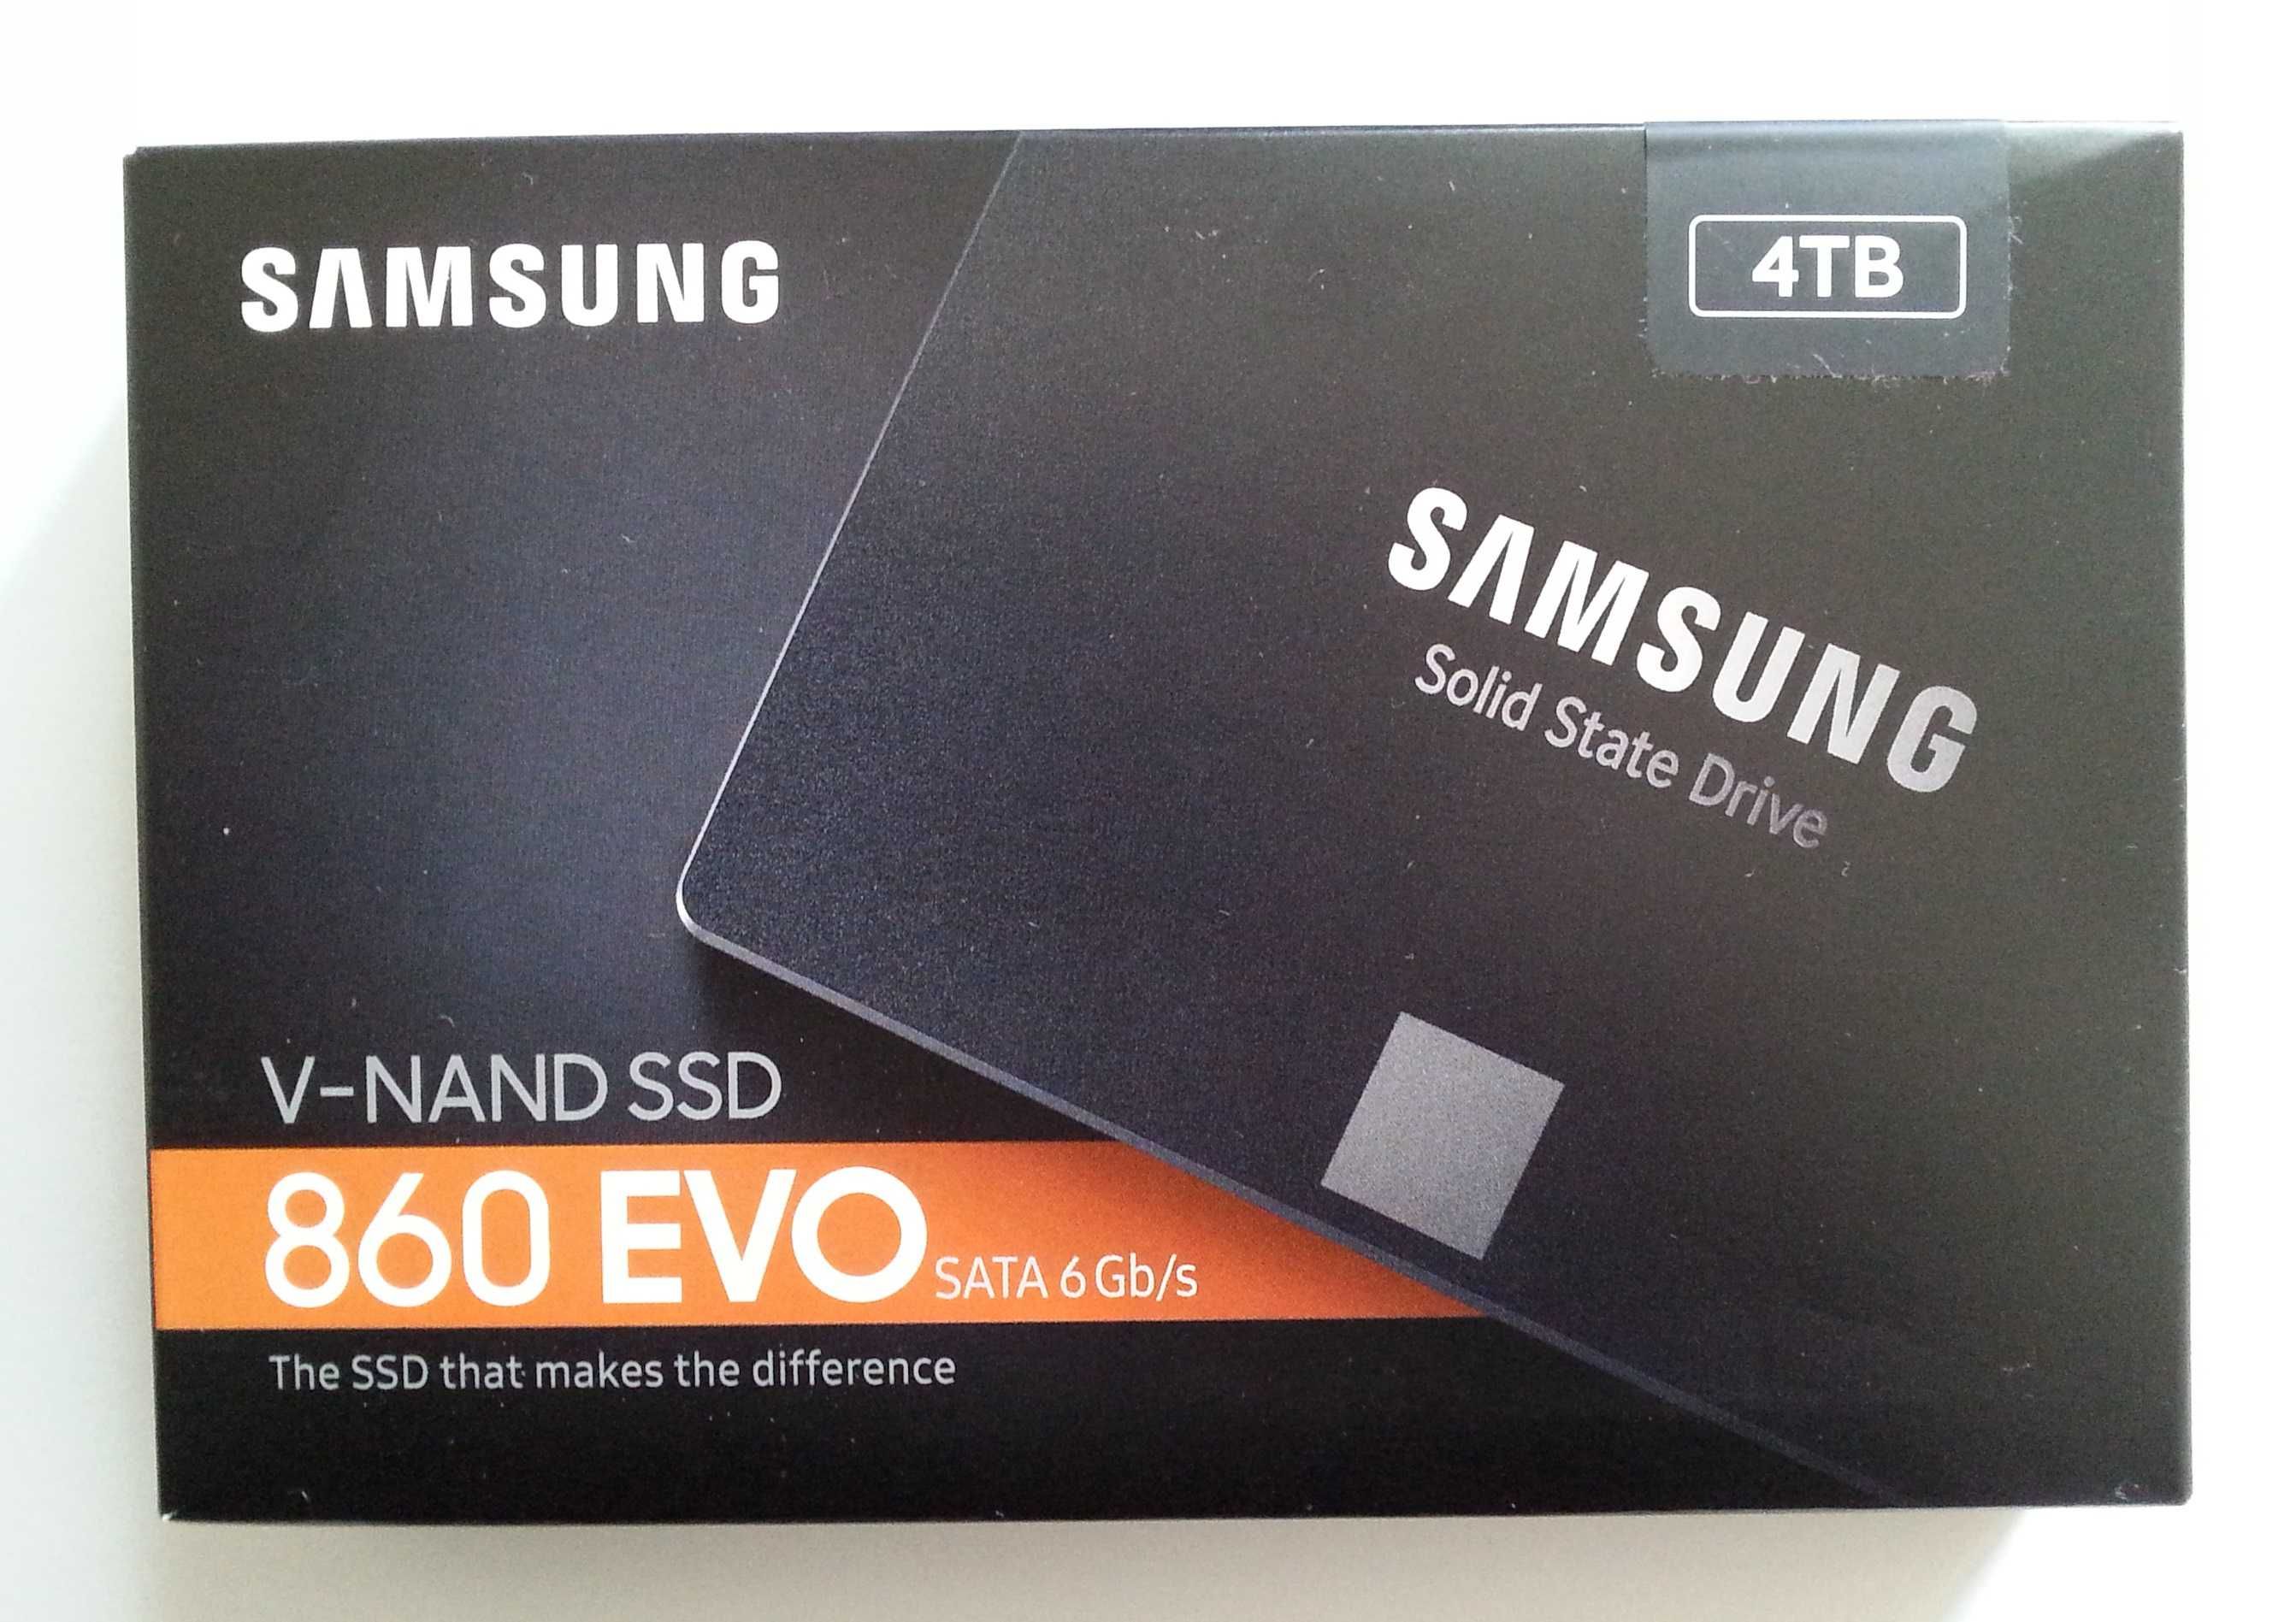 Nowy,rewelacyjny-500gb.Samsung dysk ssd.Polecam inne.Foto